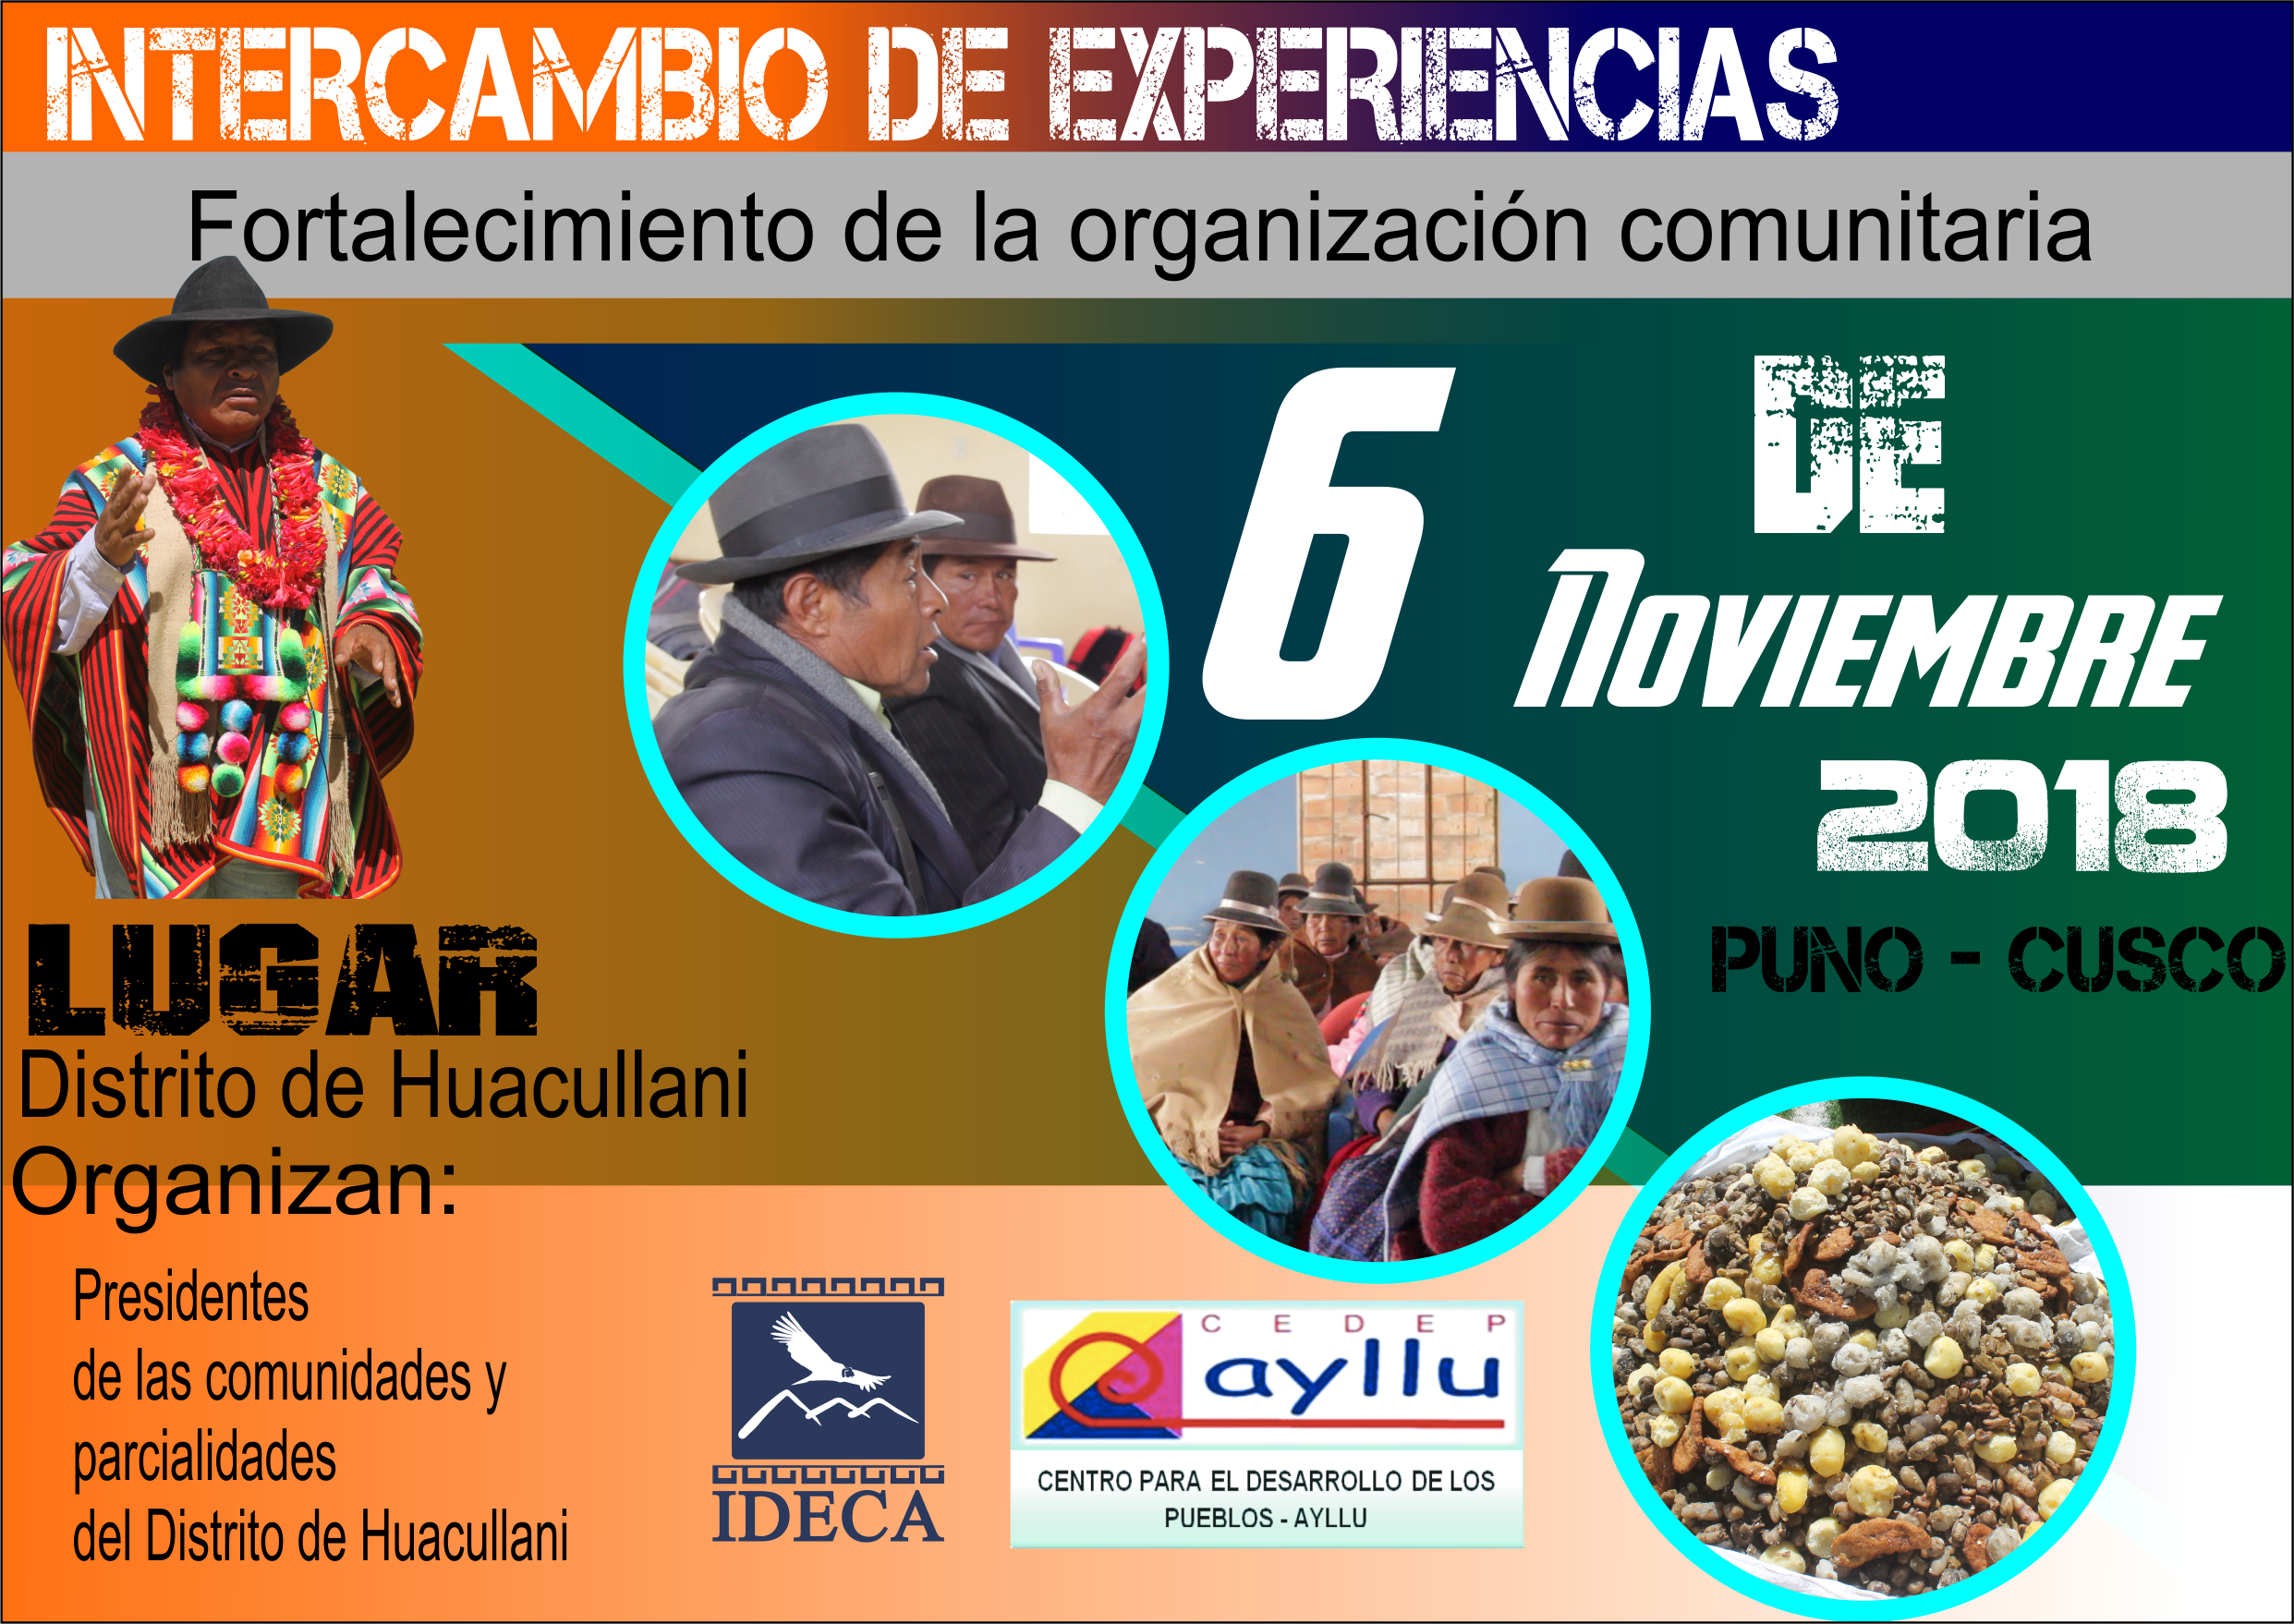 Presidentes de Huacullani y líderes y lideresas de Cusco compartirán experiencias sobre el fortalecimiento de la organización comunitaria